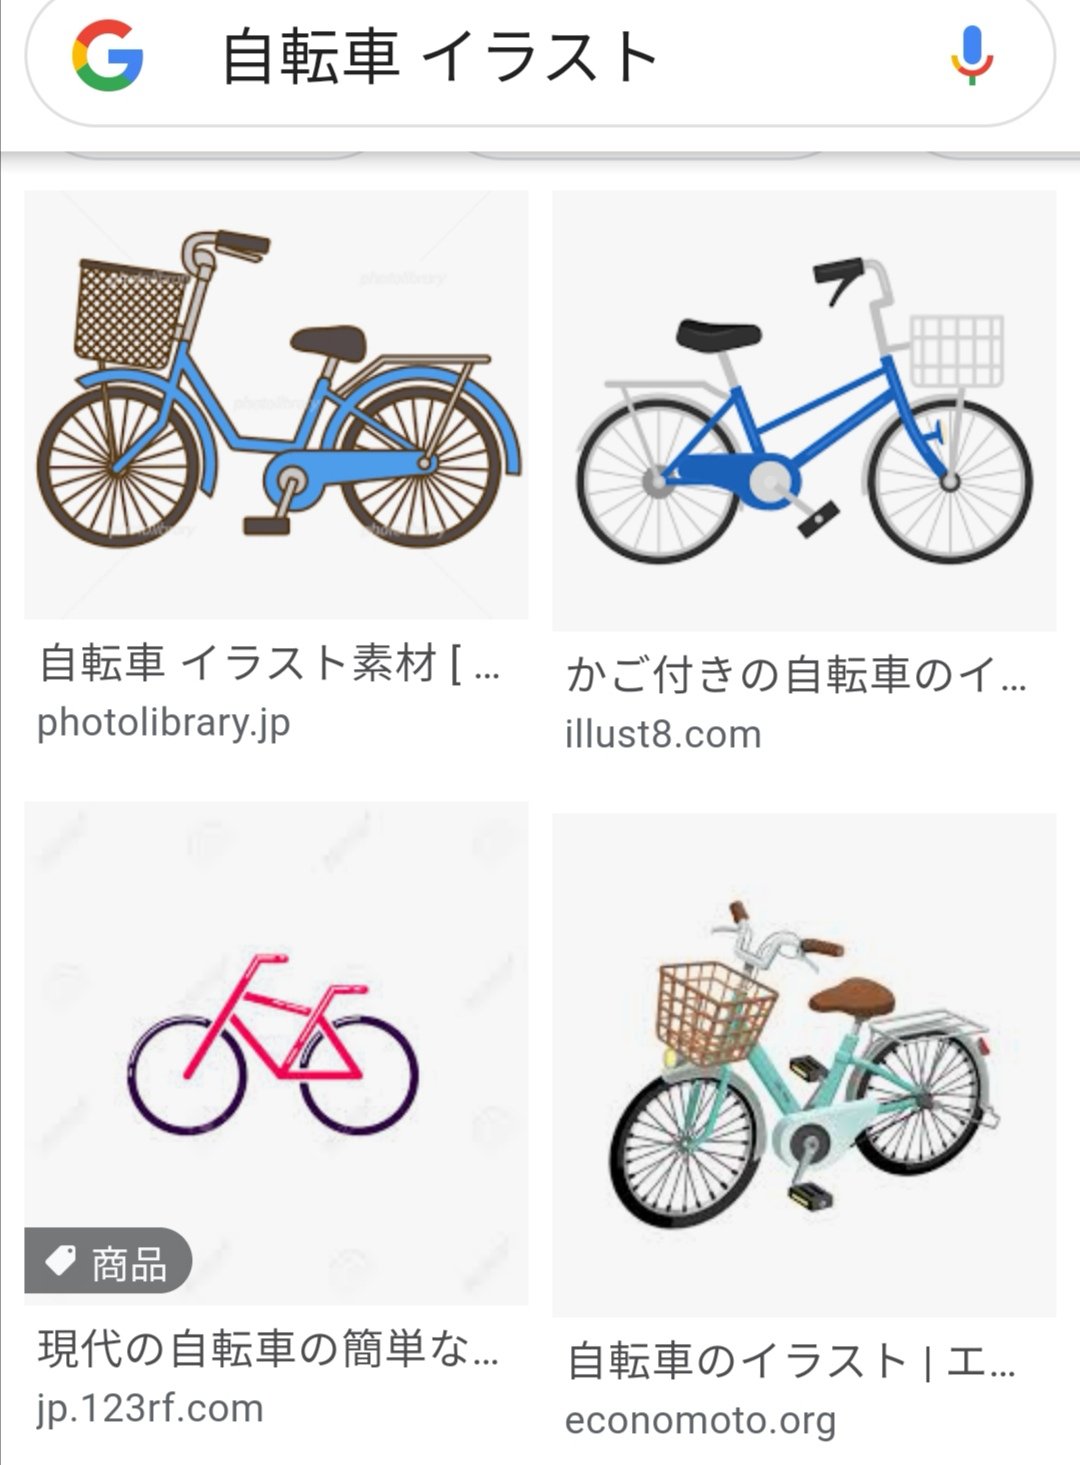 Twitter 上的 宮尾岳 自転車 イラスト で検索しただけでこうだ フツーの人たちには チェーンケースが右か左かなんてどうでもいい なんである そんなのいちいち気にするのは 心の狭い自転車漫画家だけだ Tdt T Co 67pplsrhyd Twitter